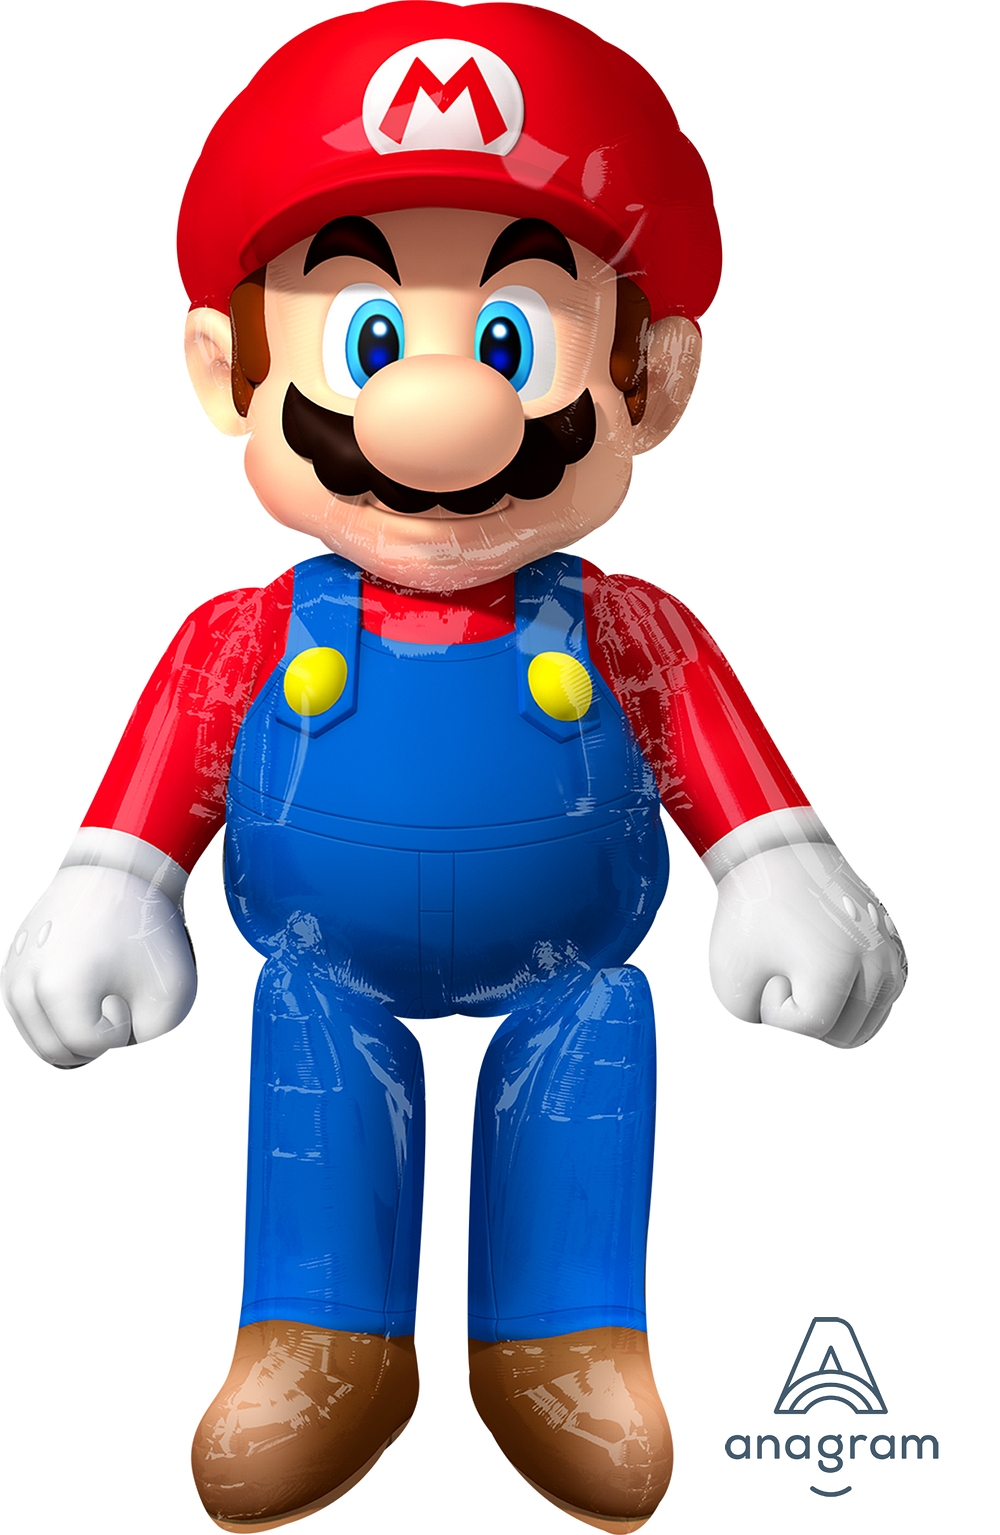 Airwalker Mario Bros balloon